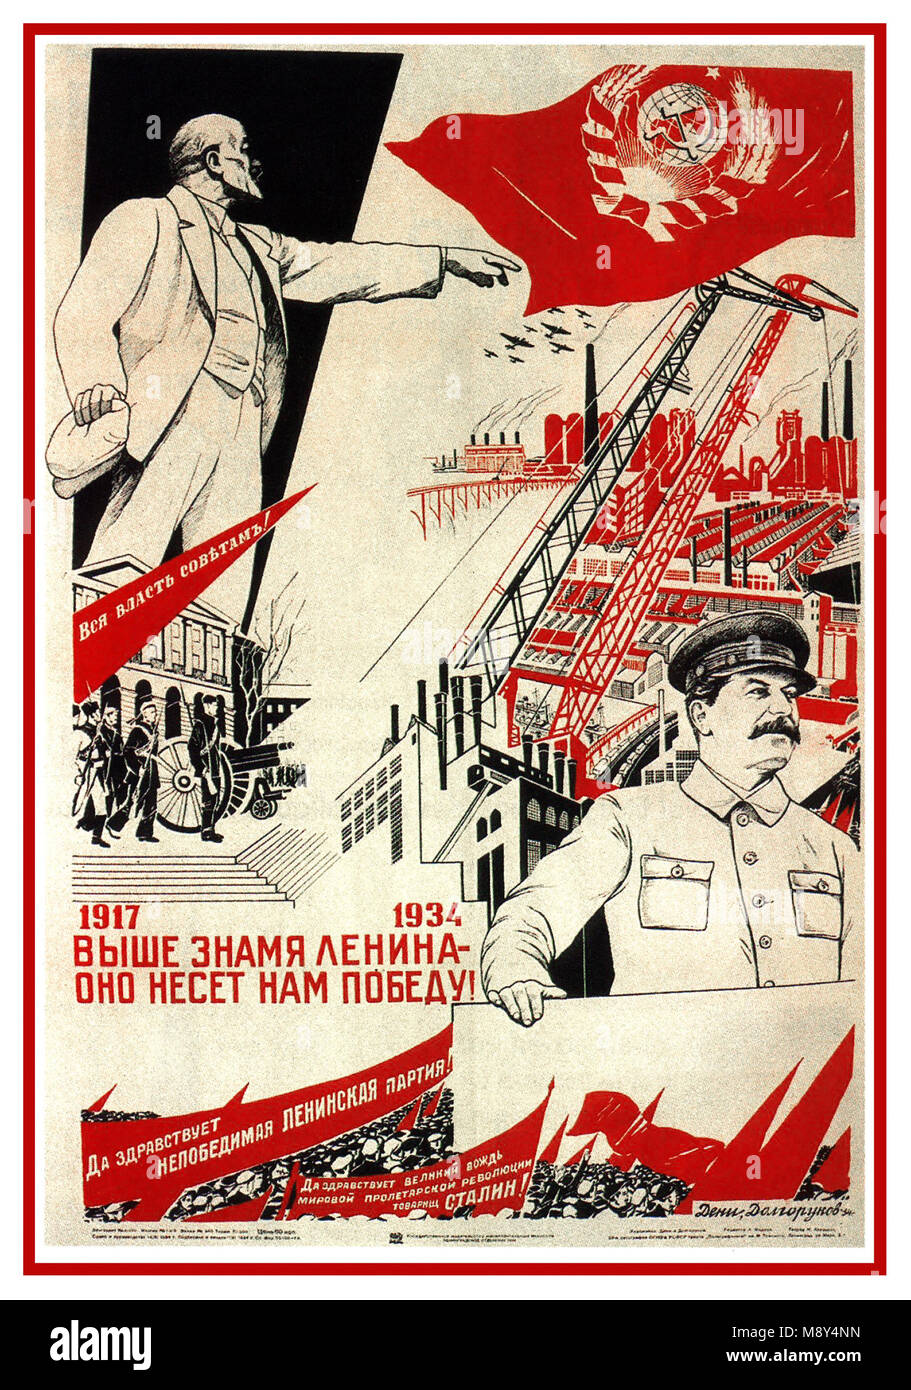 La Russie soviétique Vintage années 30 en affiches de propagande de l'URSS la Russie soviétique le slogan et le titre de l'affiche : 1917-1934. C'est Lénine, pointant derrière "Staline nous conduit à la victoire, Staline ' guide suprême, présenté comme digne héritier de Lénine. Staline derrière son travail : les usines, les grues, les barrages ... symbolisant l'industrie soviétique développé par Staline avec les plans de cinq ans à partir de la chambre 1928 Banque D'Images